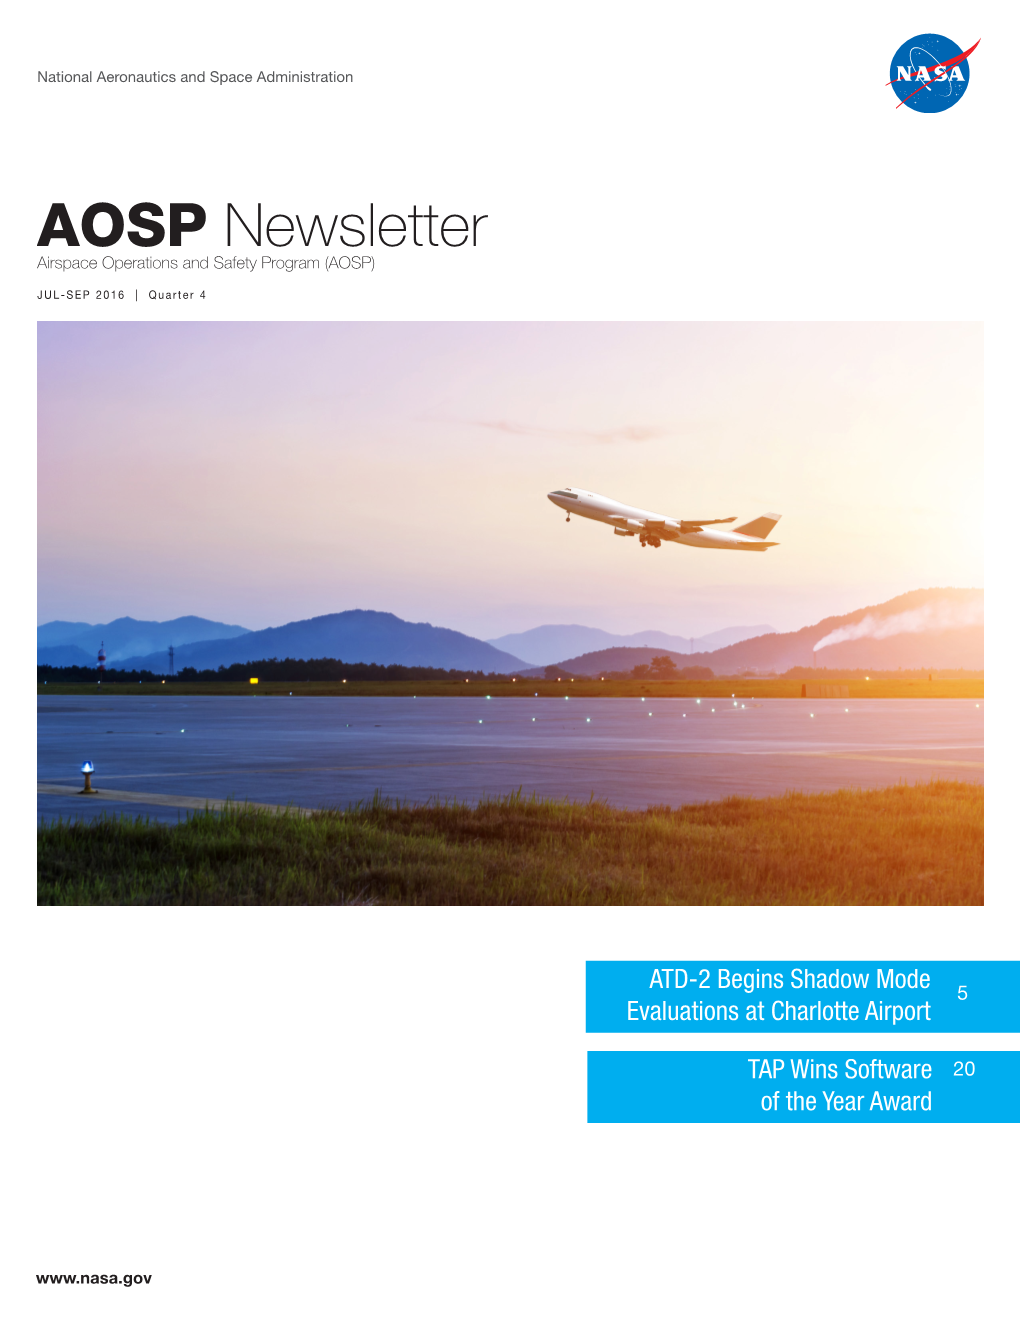 AOSP Newsletter Jul-Sep 2016 Q4.Pdf